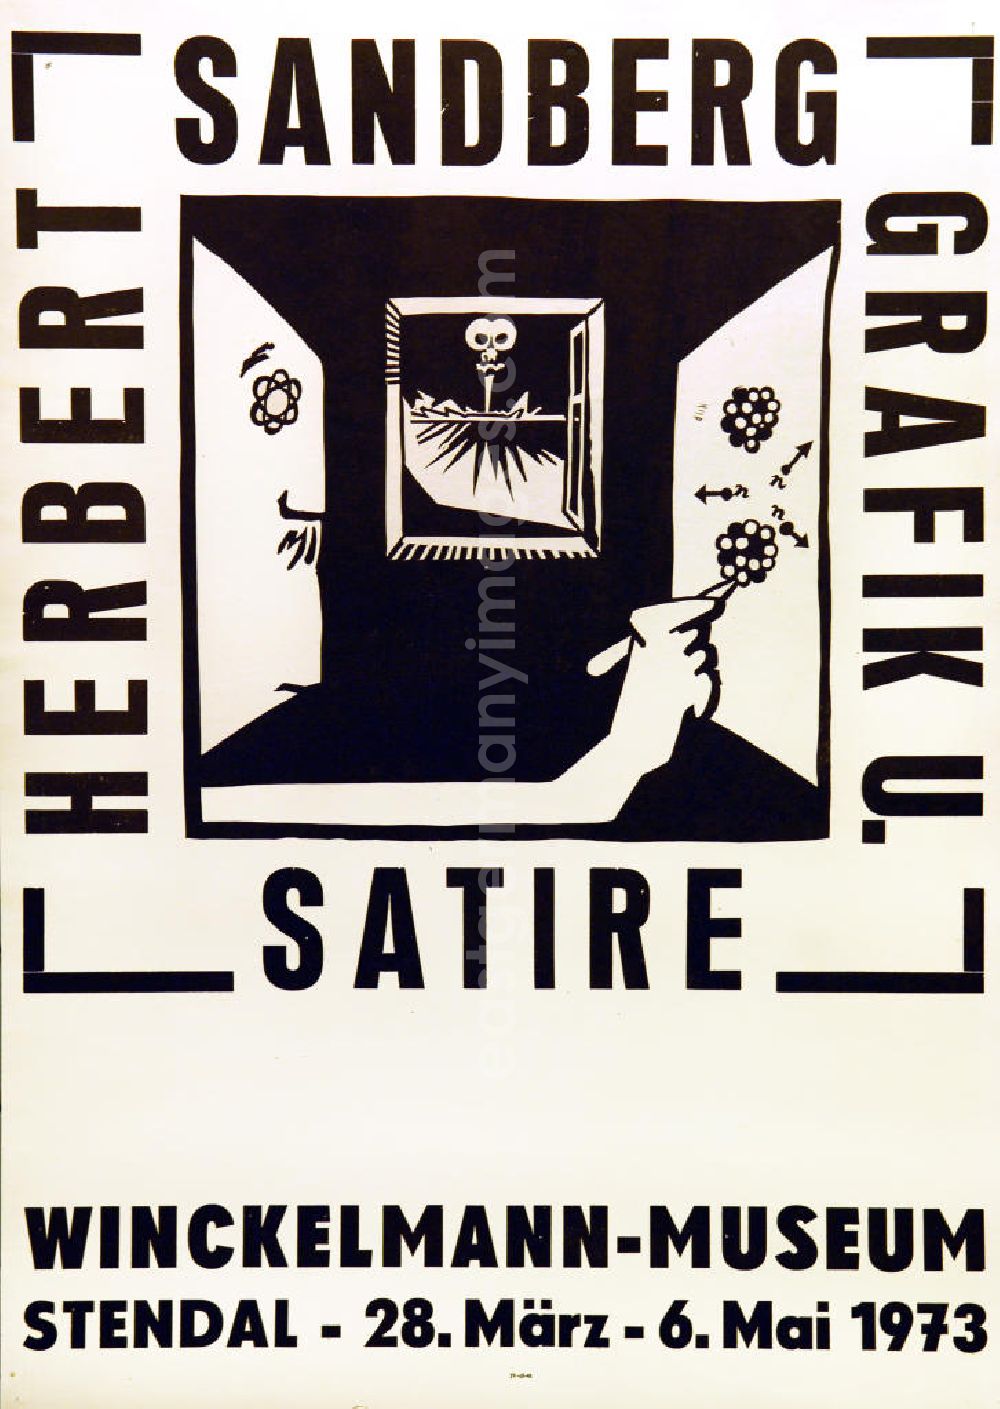 GDR picture archive: Berlin - Plakat der Ausstellung Herbert Sandberg Grafik und Satire vom 28.03.-06.05.1973 Winckelmann-Museum Stendal, 43,0x6